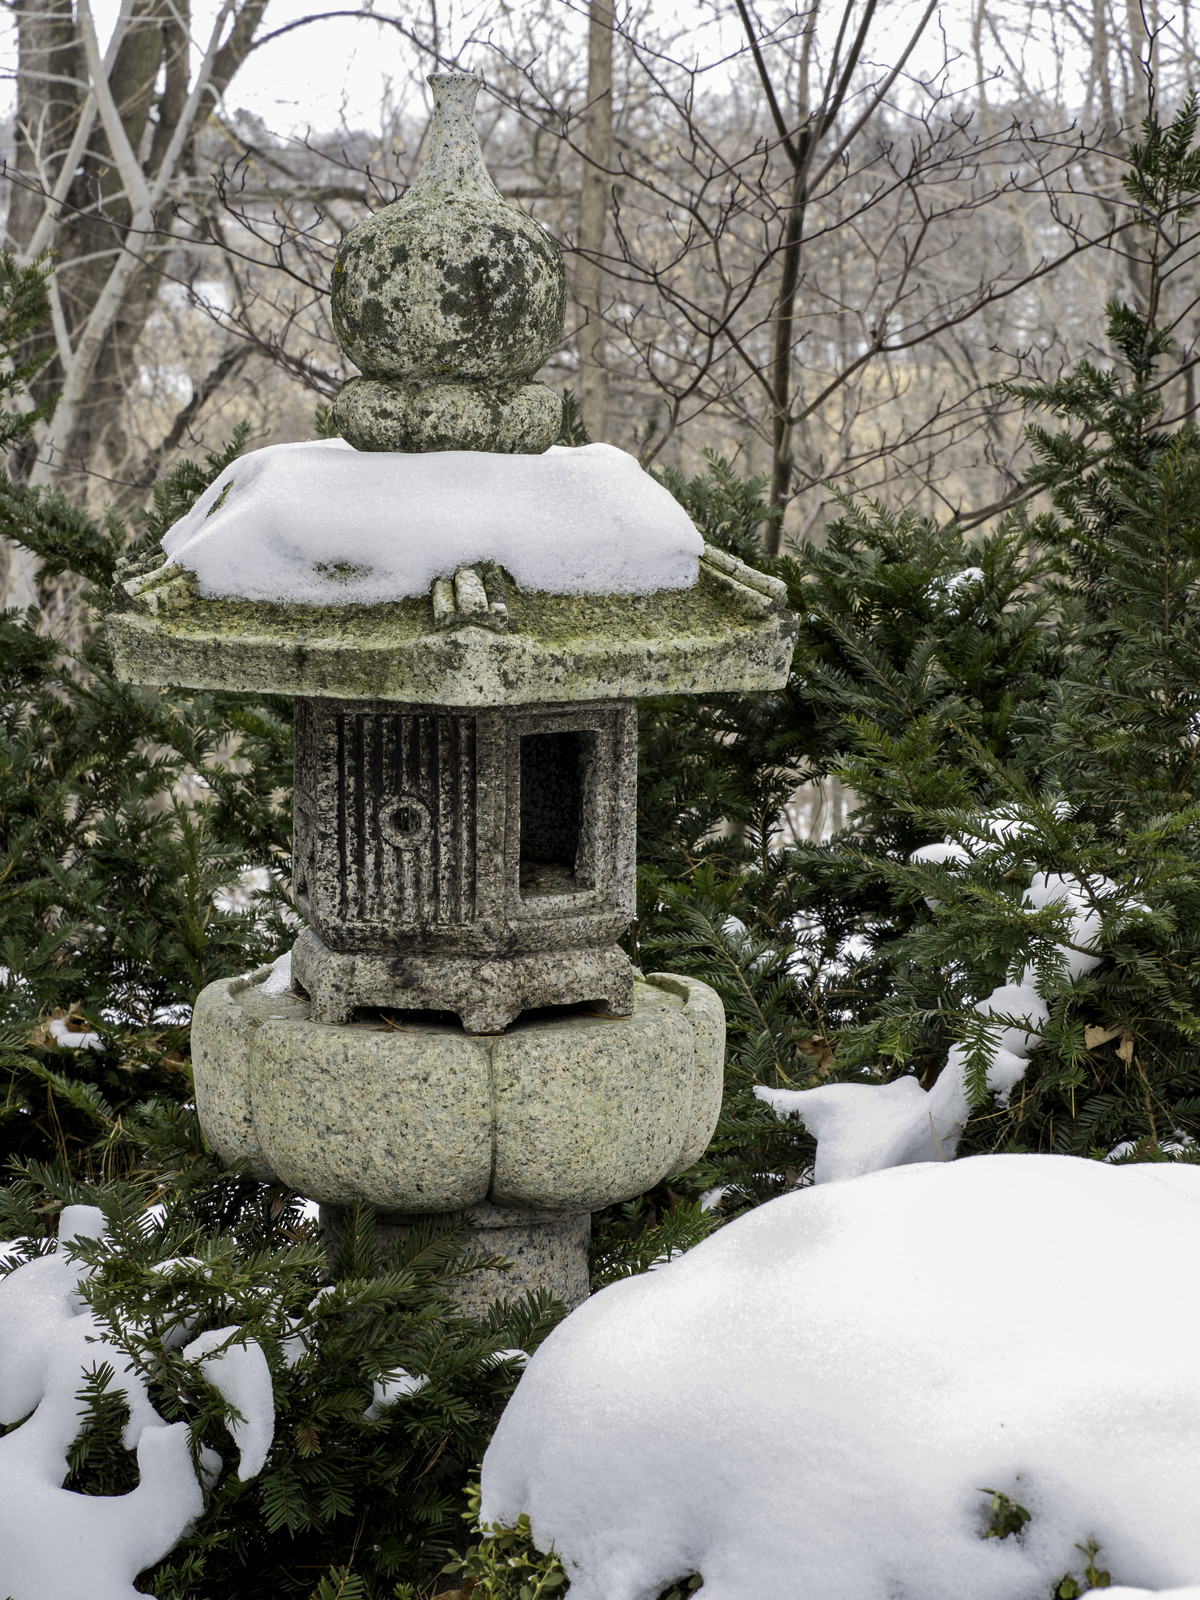 Pedestal lantern in snow